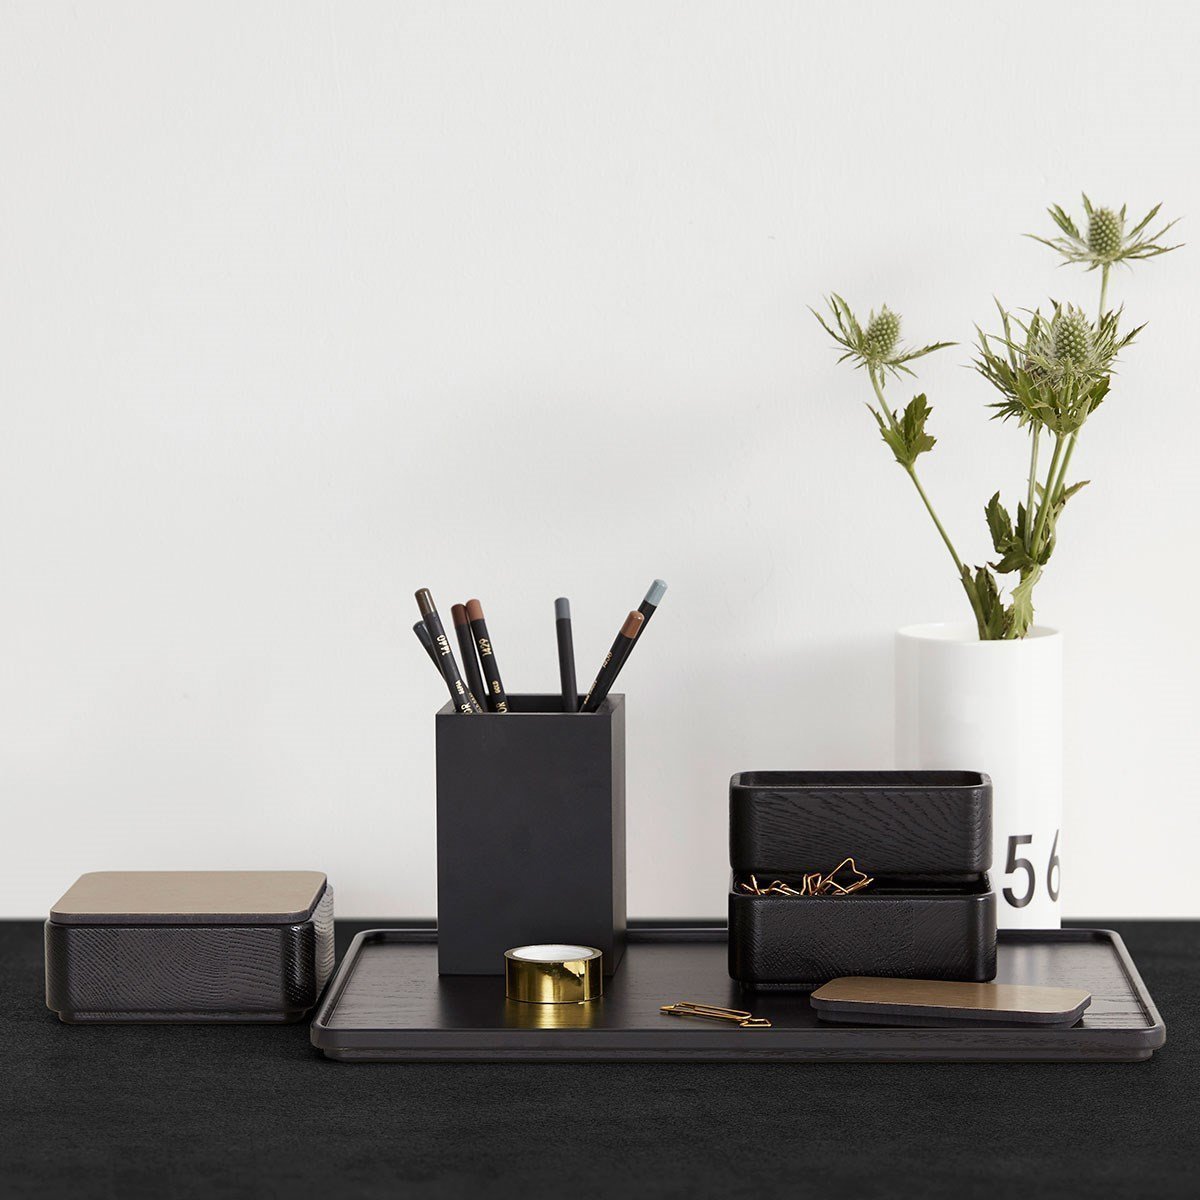 Les meubles Andersen créent une boîte en noir, 1 compartiment, 12x12cm